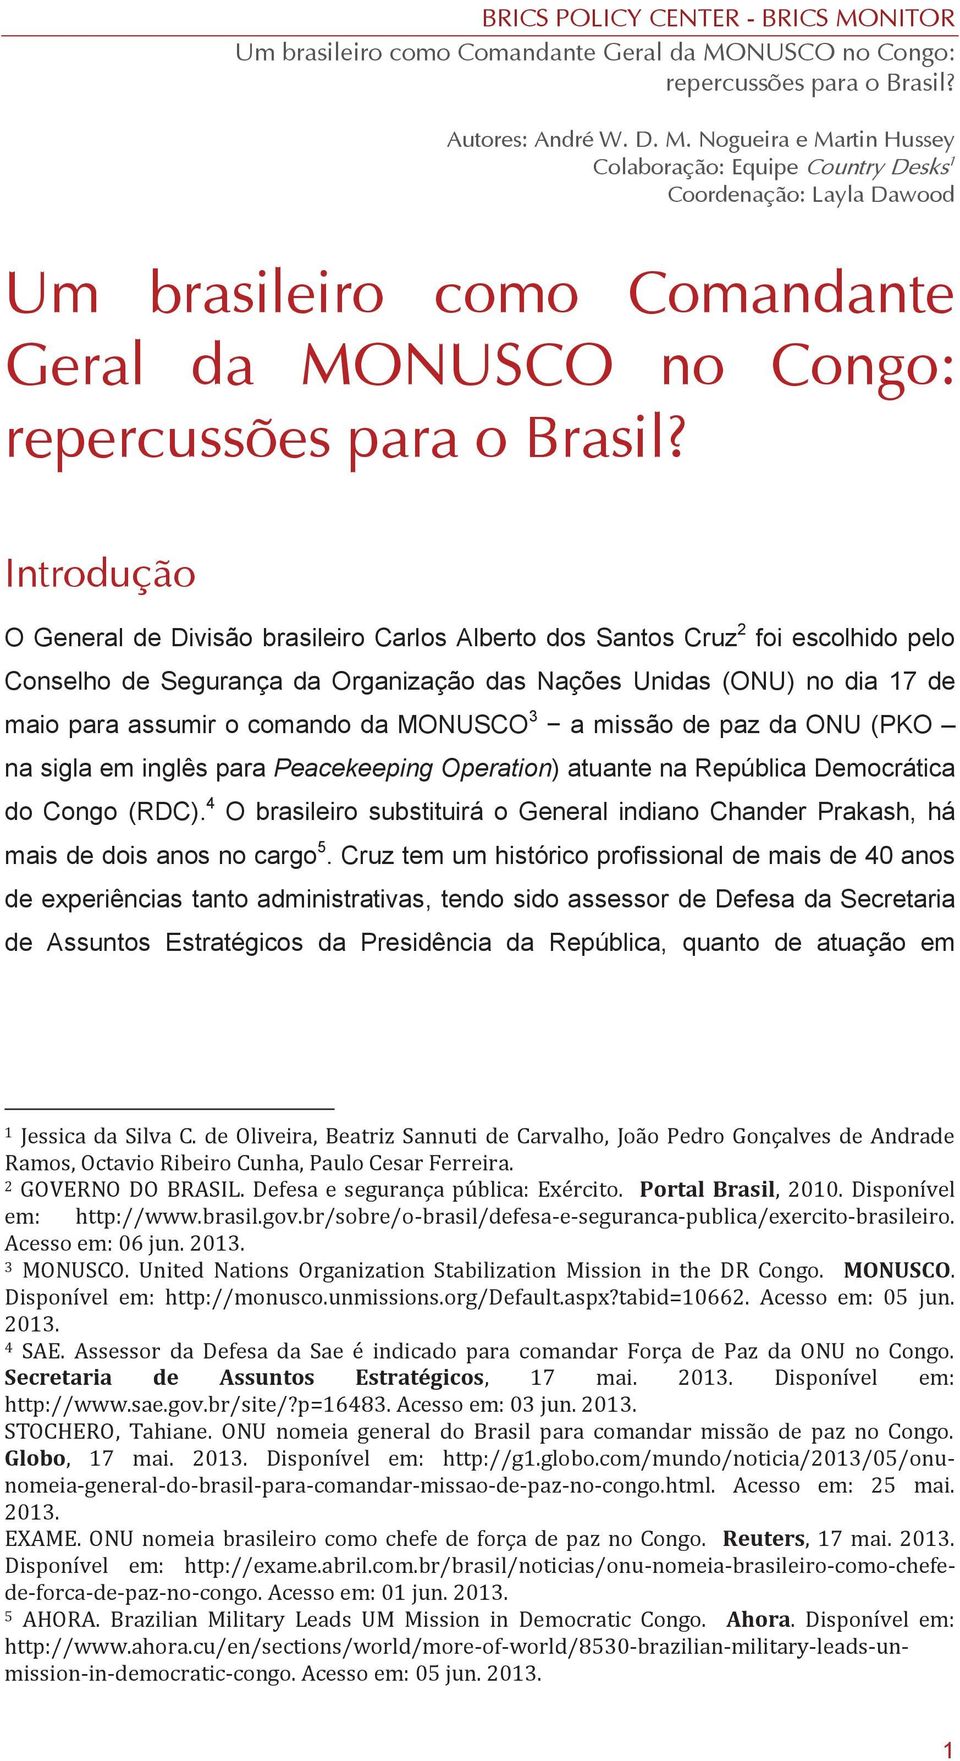 Alberto dos Santos Cruz 2 foi escolhido pelo Conselho de Segurança da Organização das Nações Unidas (ONU) no dia 17 de maio para assumir o comando da MONUSCO 3 a missão de paz da ONU (PKO na sigla em